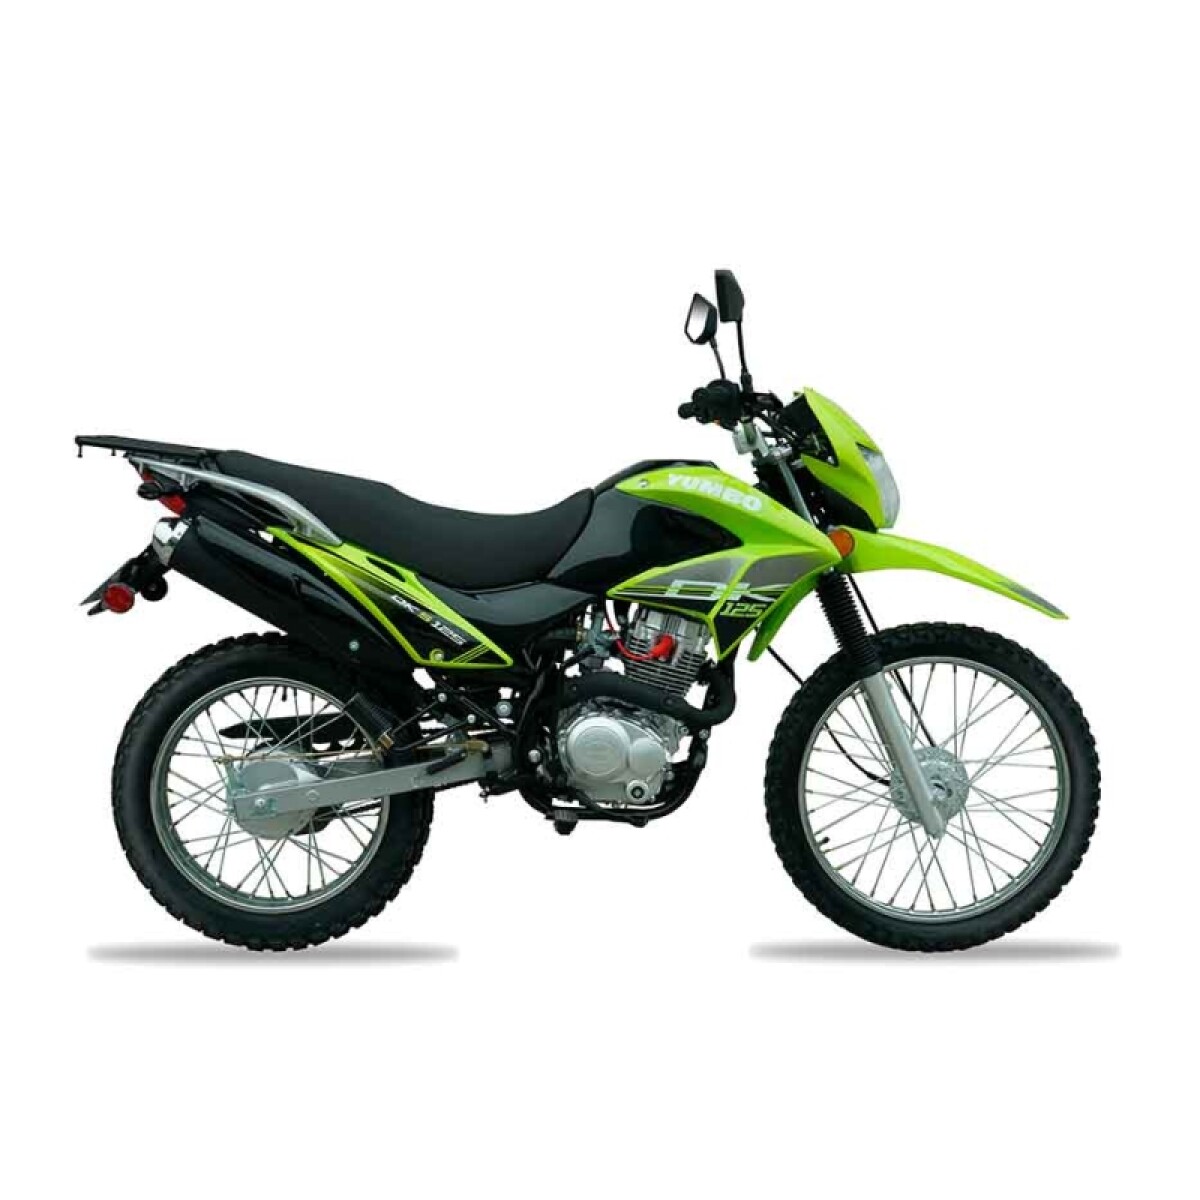 Moto Yumbo Enduro Dk 125 Std (m/nuevo) - Verde 